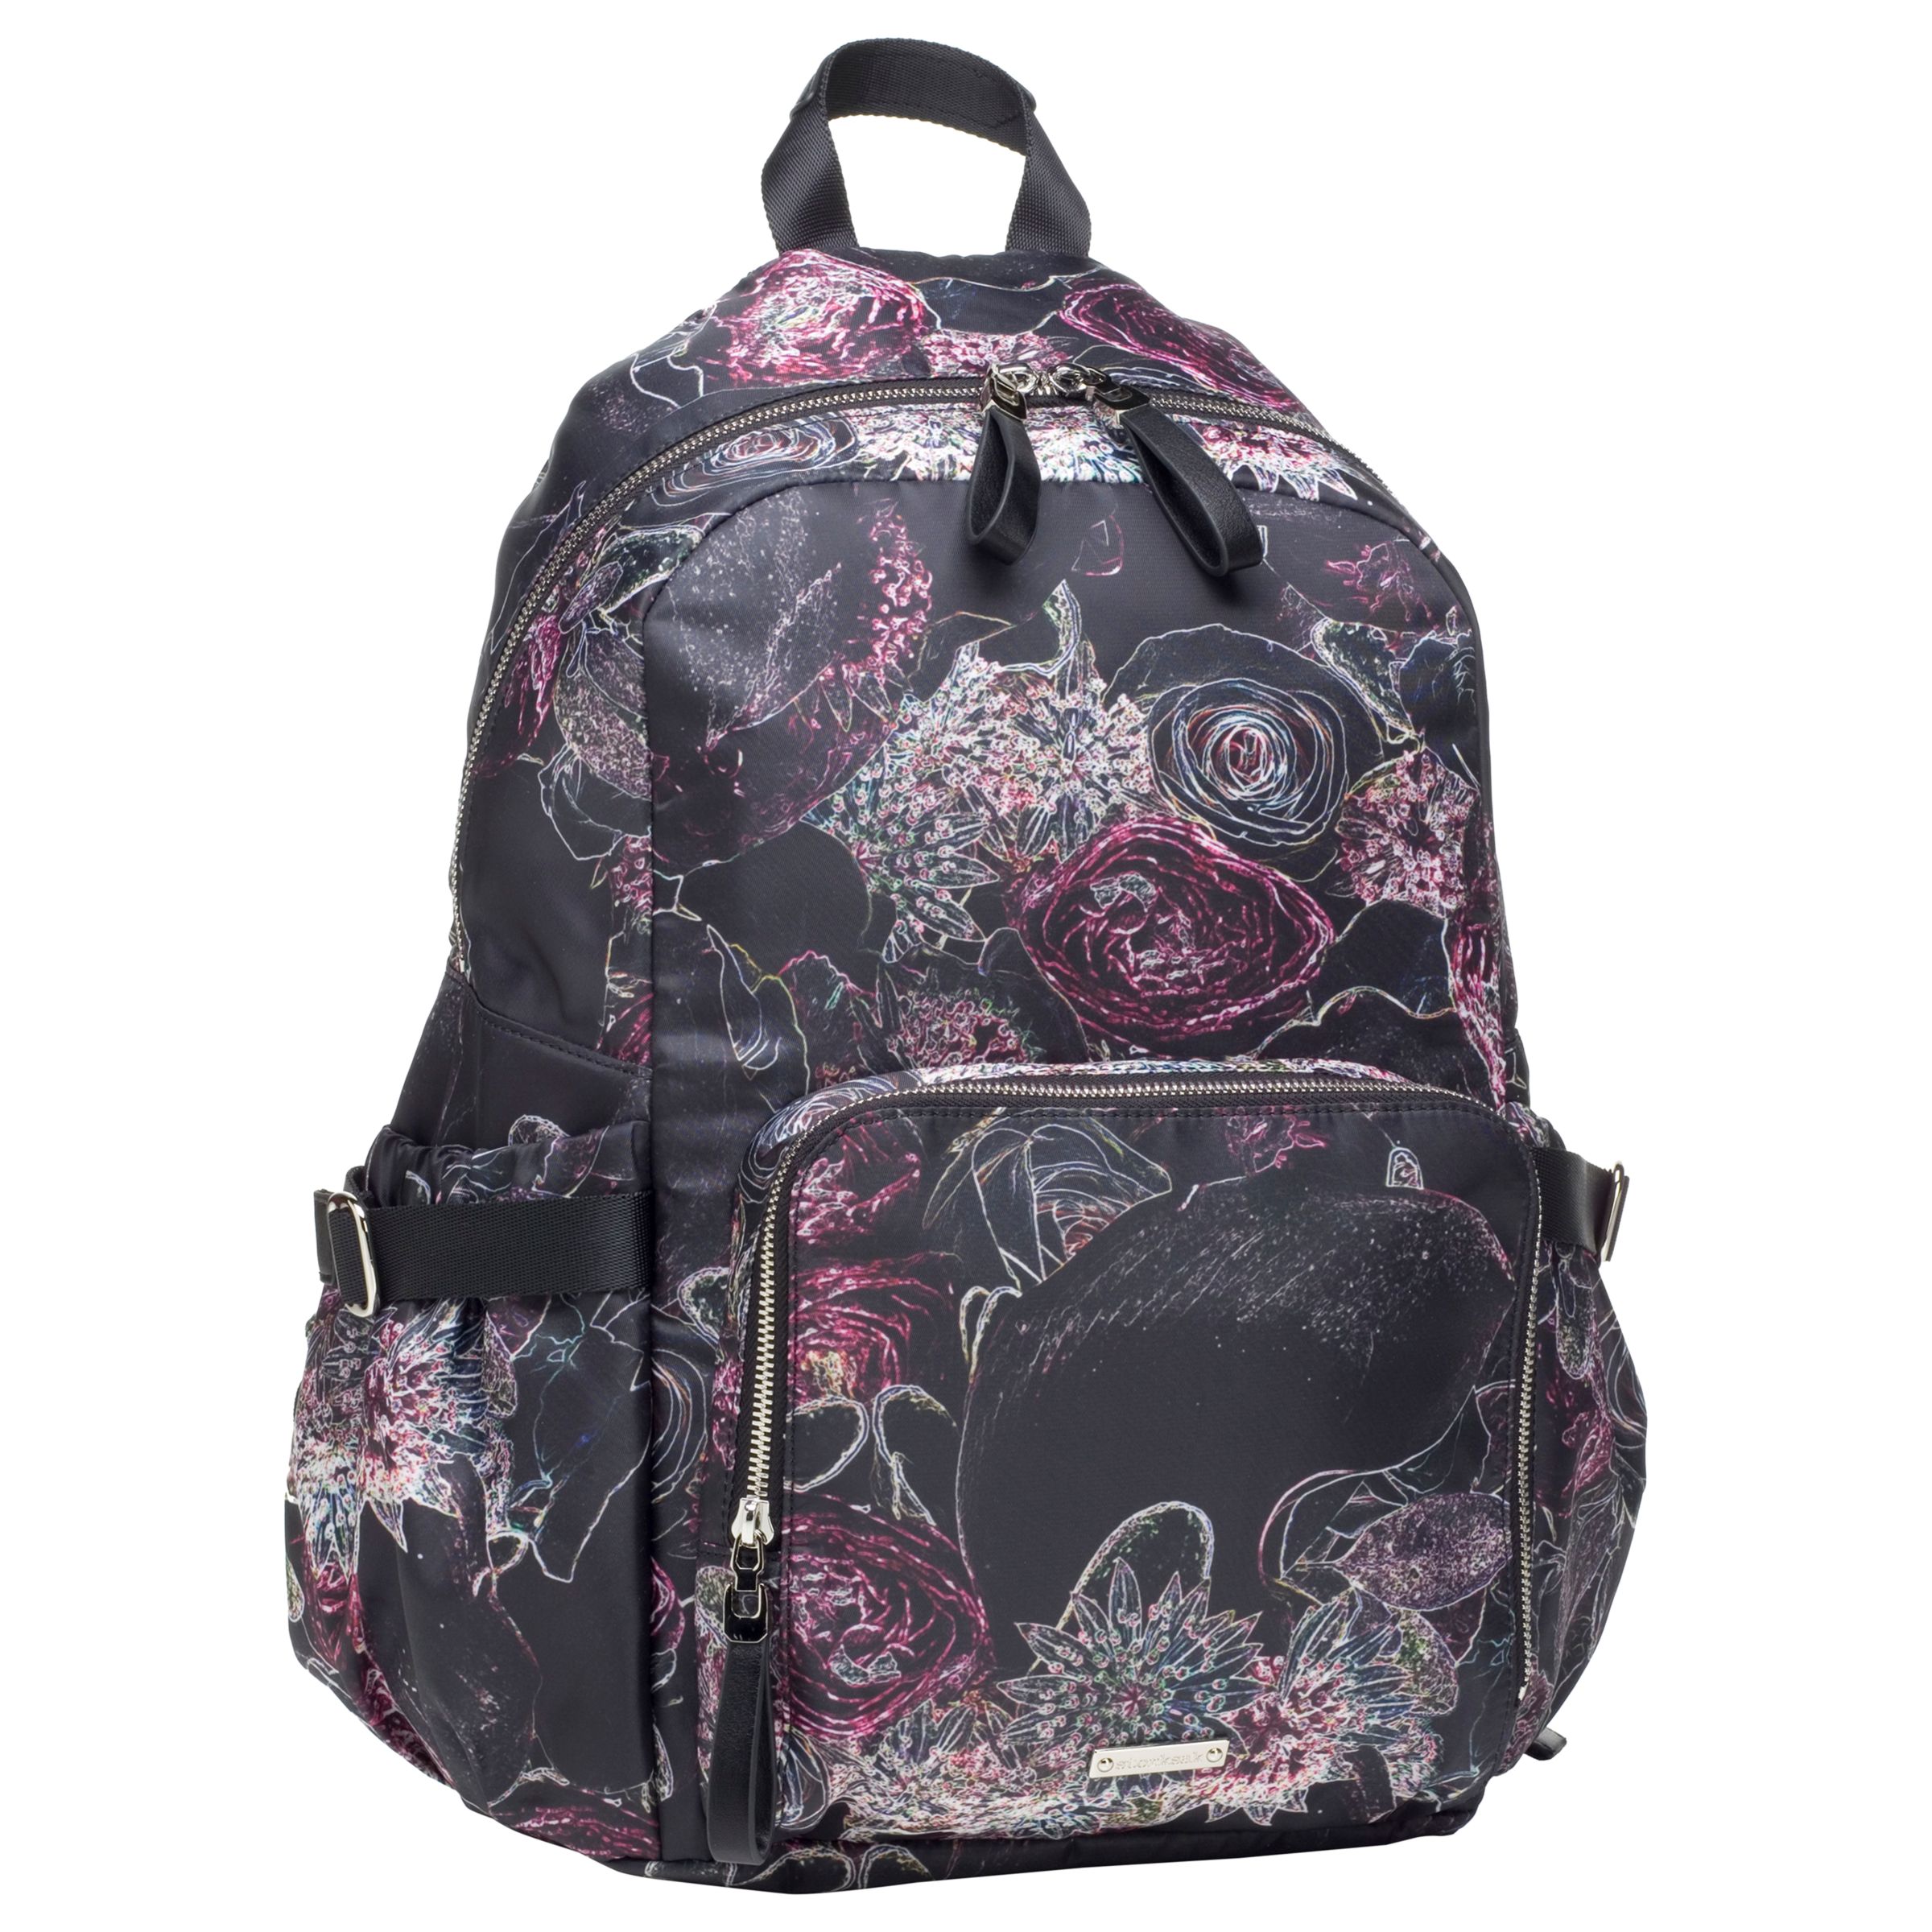 Storksak Hero Changing Backpack, Floral